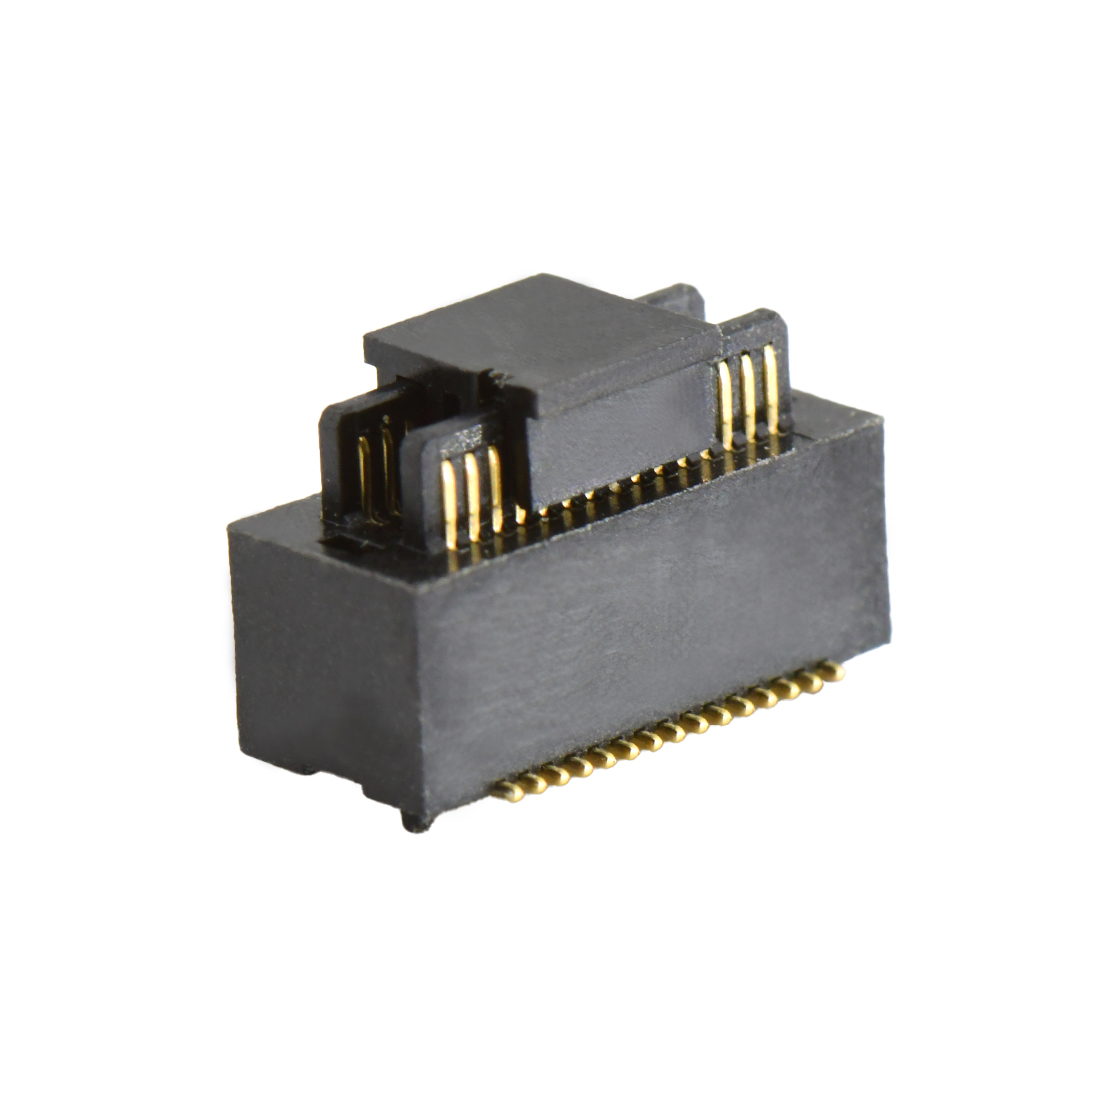 B0502板对板连接器Pitch 0.5 H4.0mm双槽双排 SMT型公座 30Pin黑色 Gold flash